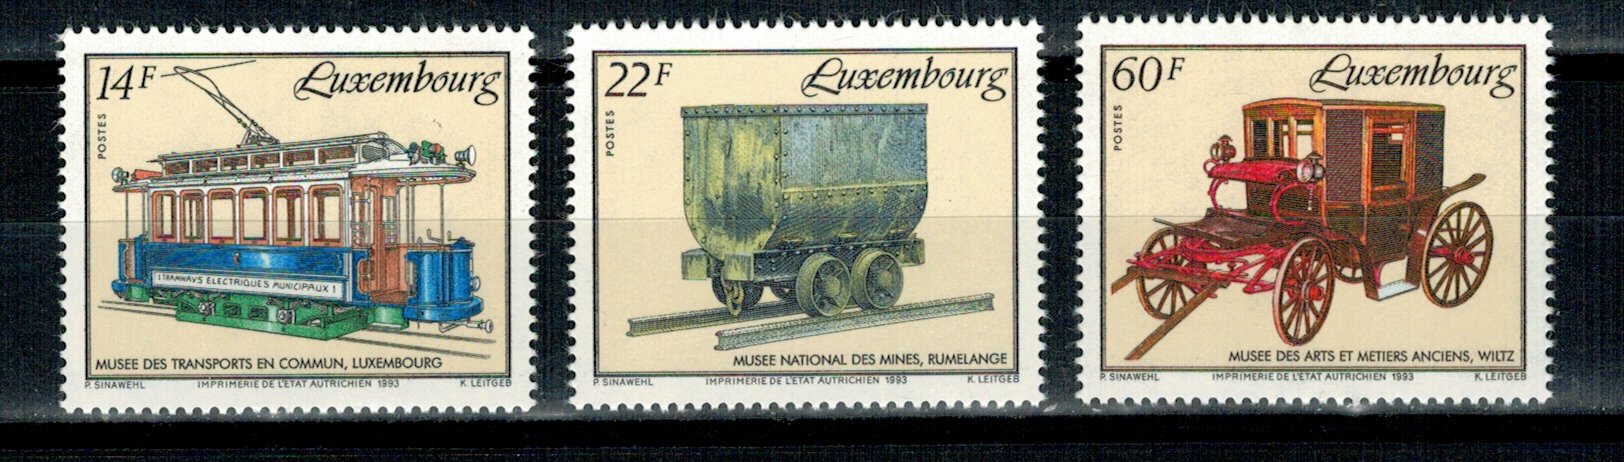 Luxemburg 1993 - Mijloace de transport, serie neuzata